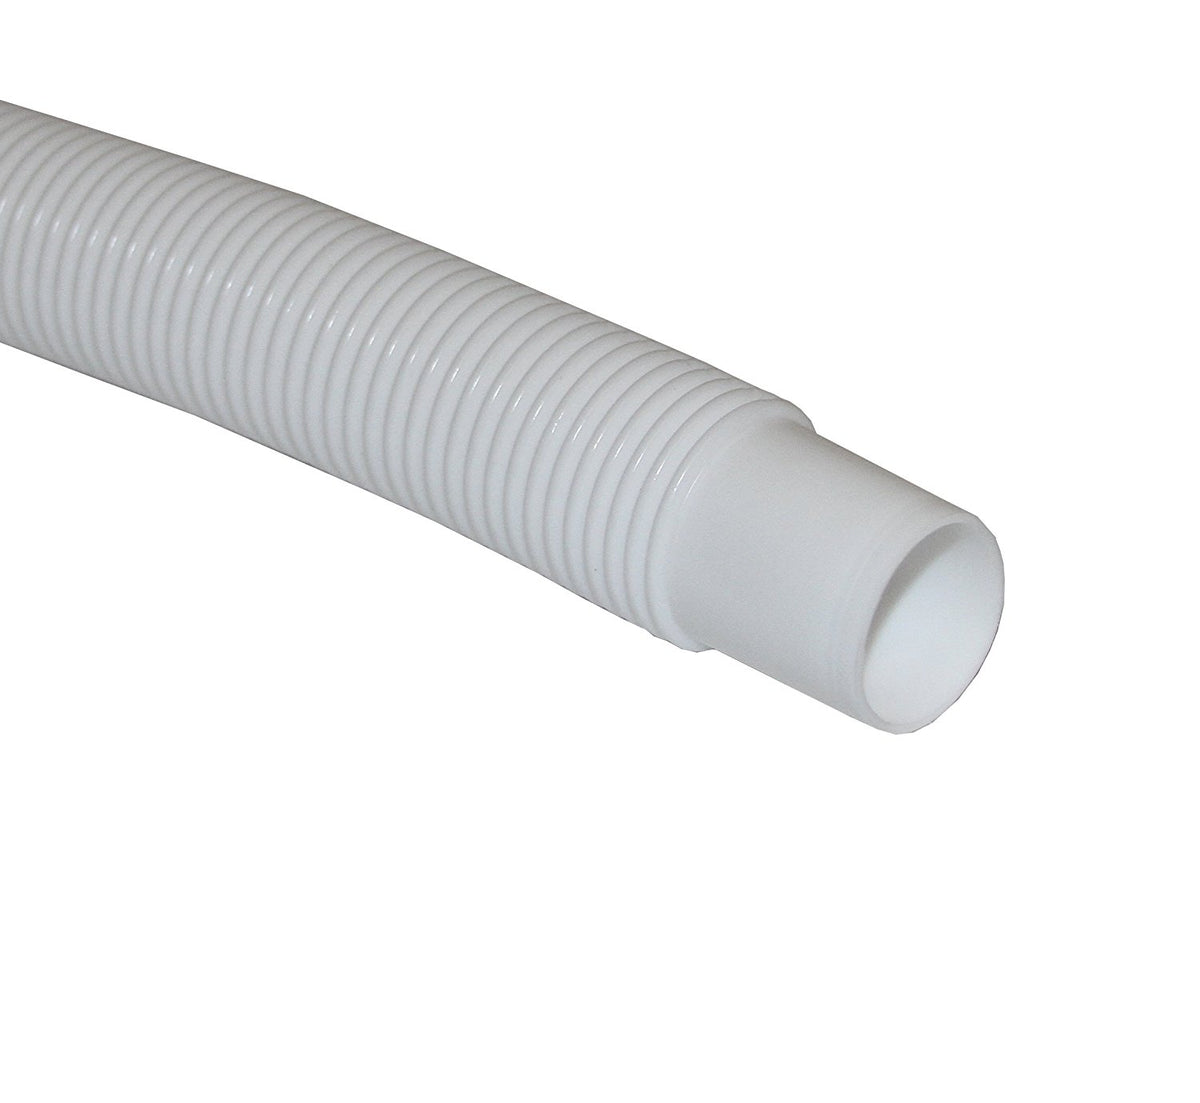 Master Plumber T34004002 Low Density Polyethylene Bilge Hose, White, 1-1/8"x25'